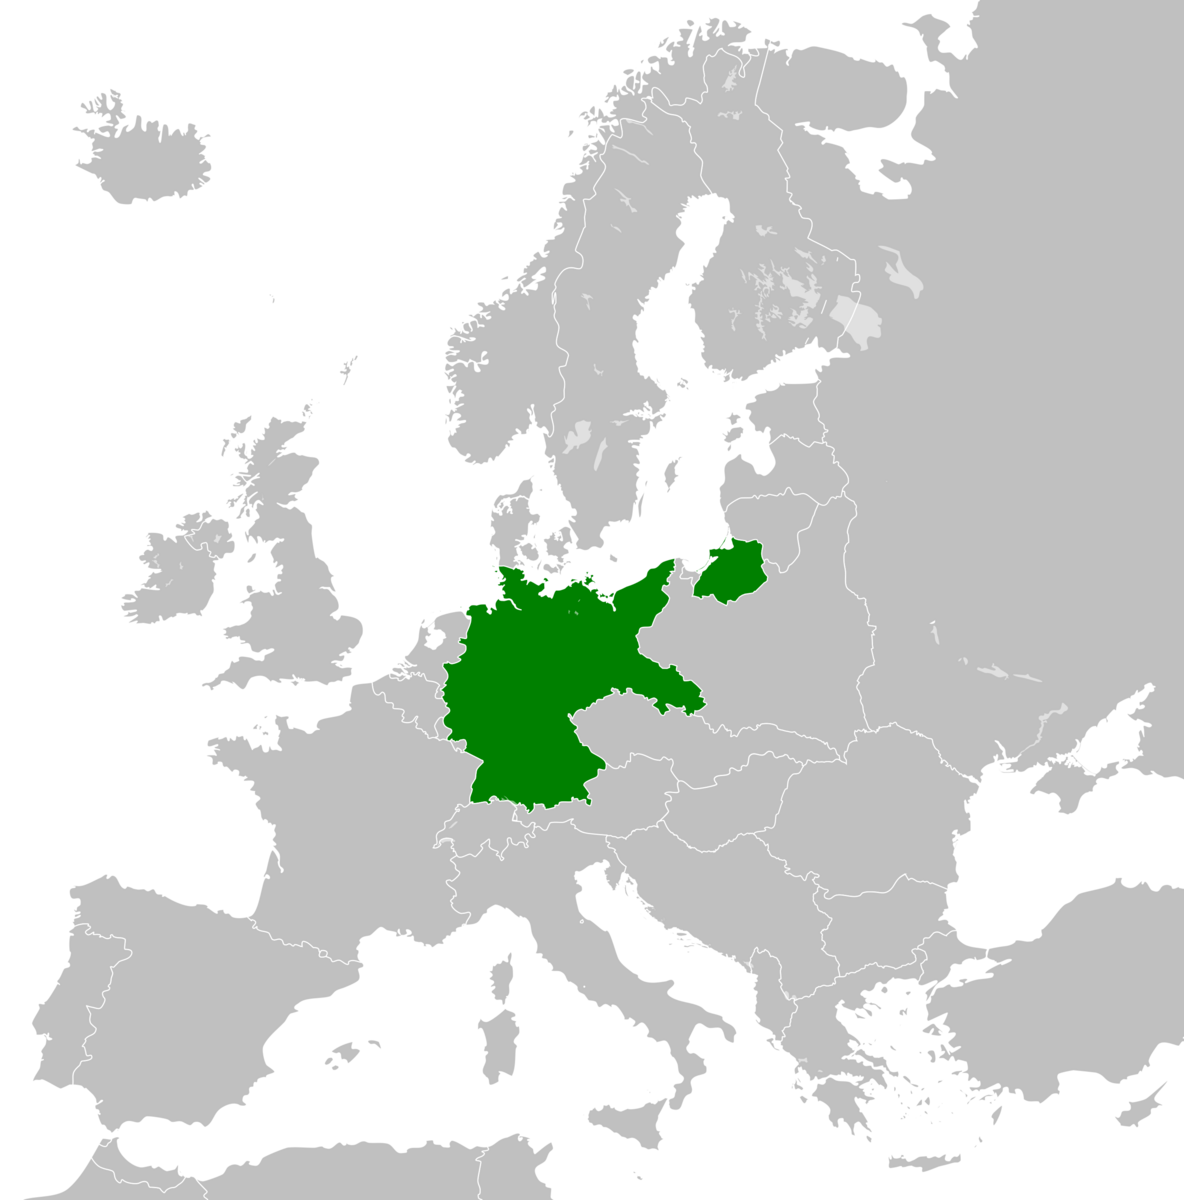 Weimarrepublikken